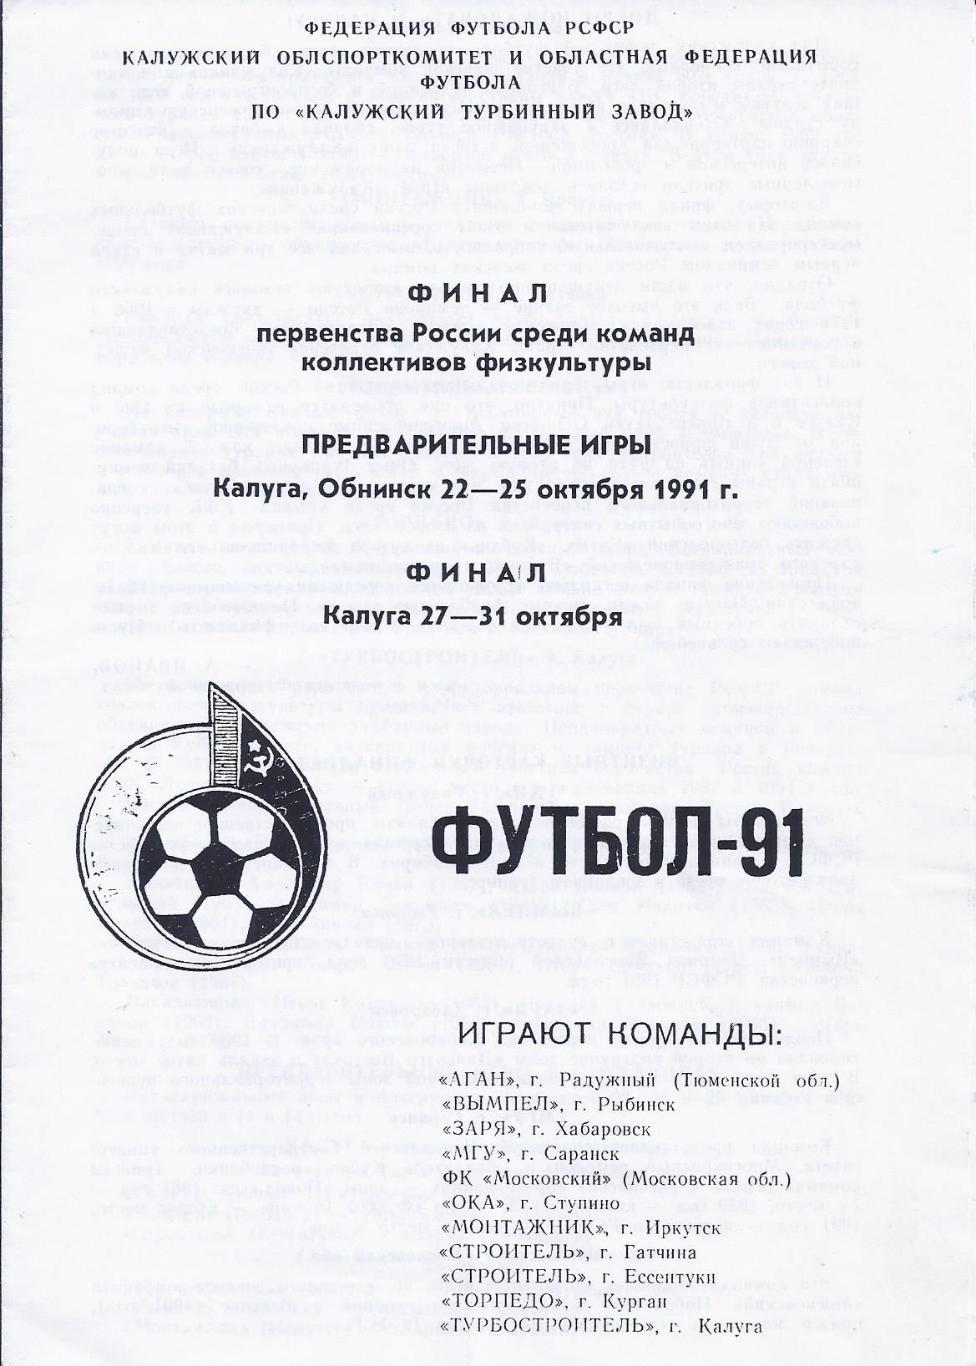 1991 год Первенство России среди команд коллективов физкультуры